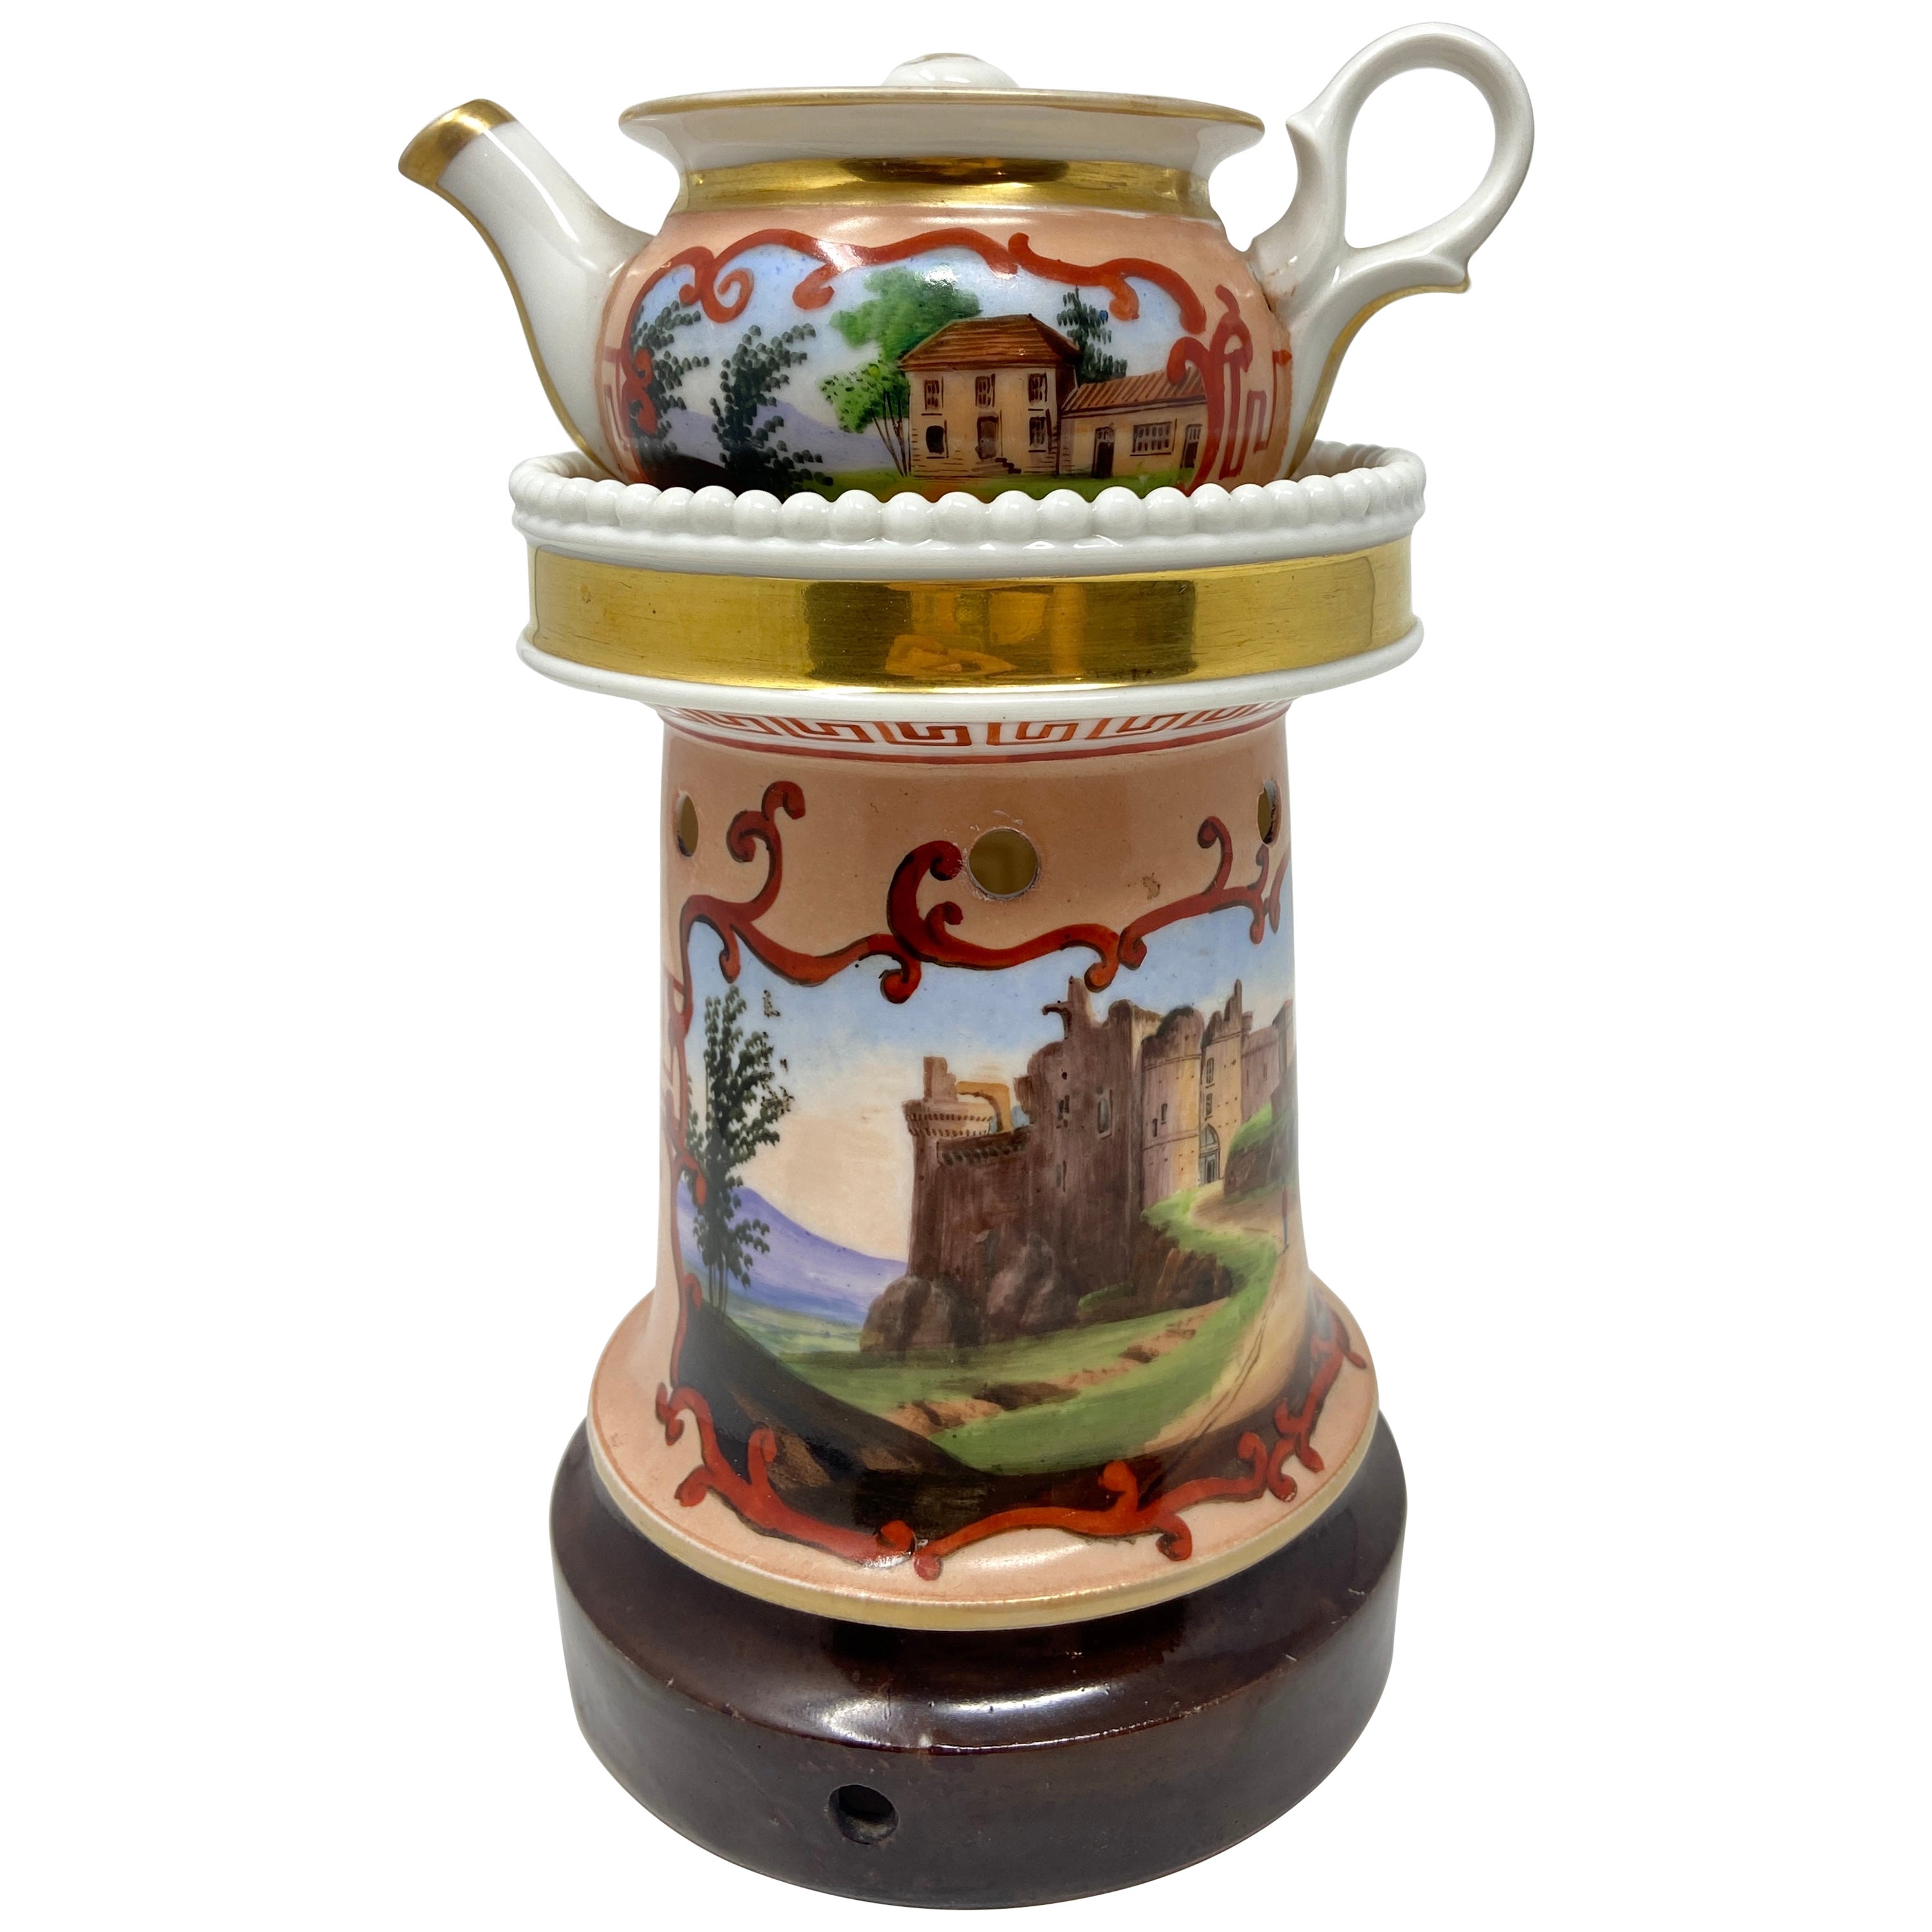 Ancienne lampe de nuit en porcelaine française « Veilleuse » ou chaudron à thé, vers 1880-1890